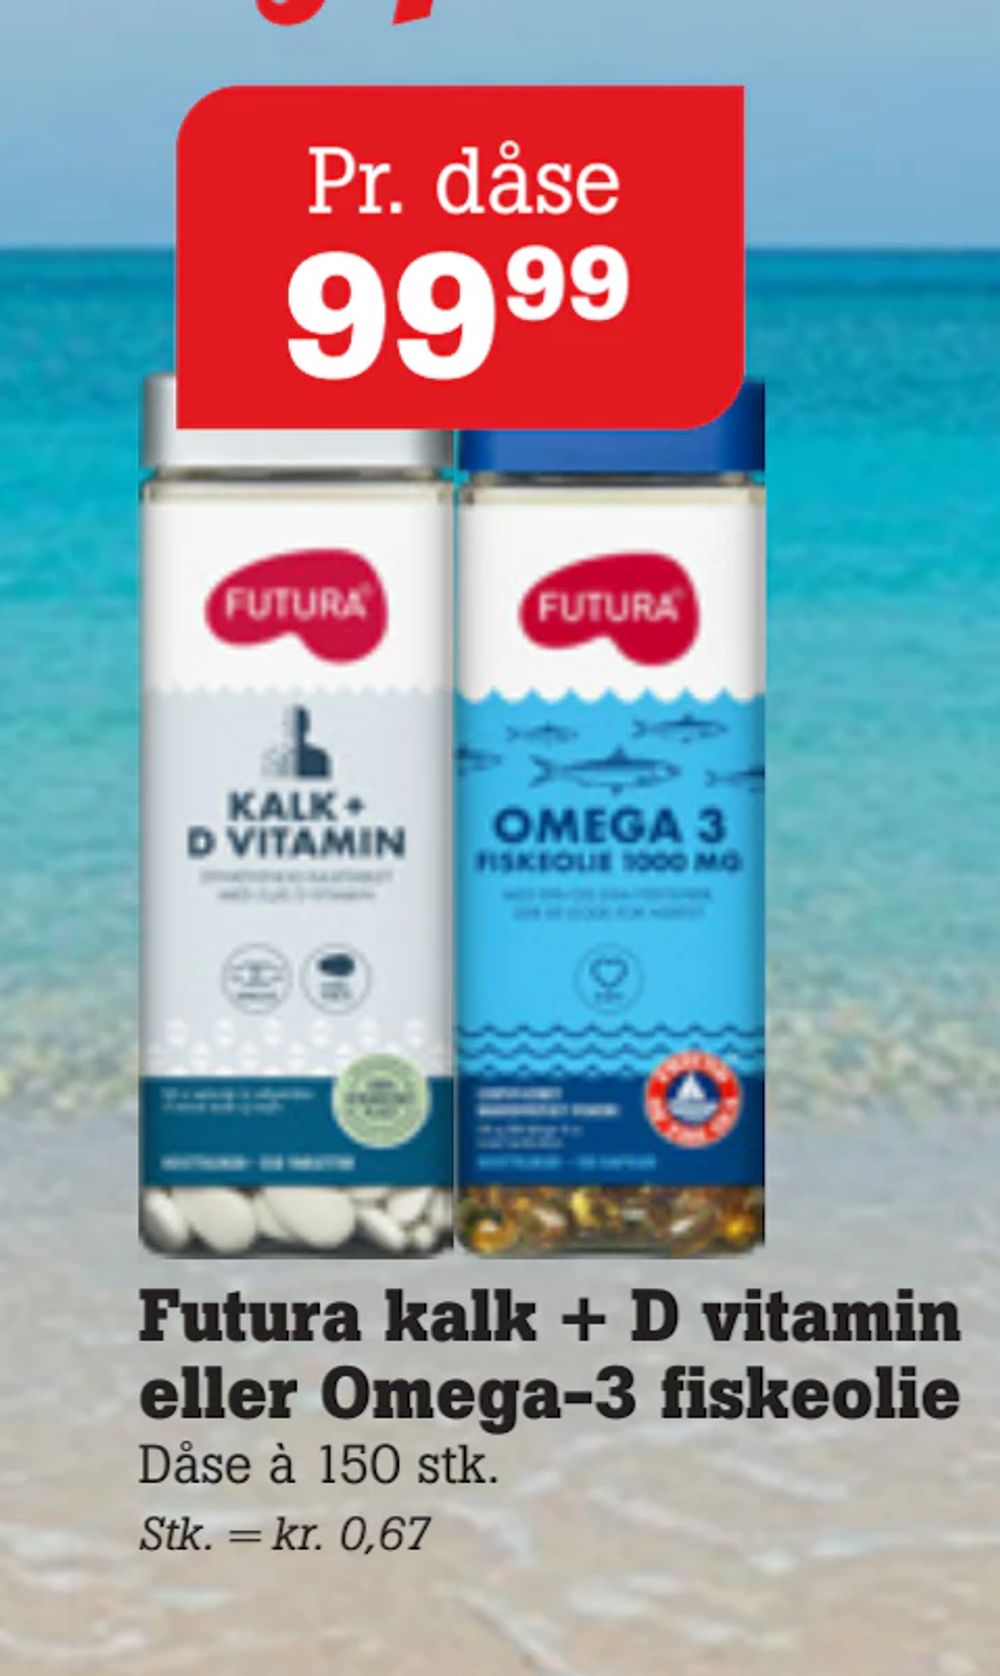 Tilbud på Futura kalk + D vitamin eller Omega-3 fiskeolie fra Poetzsch Padborg til 99,99 kr.